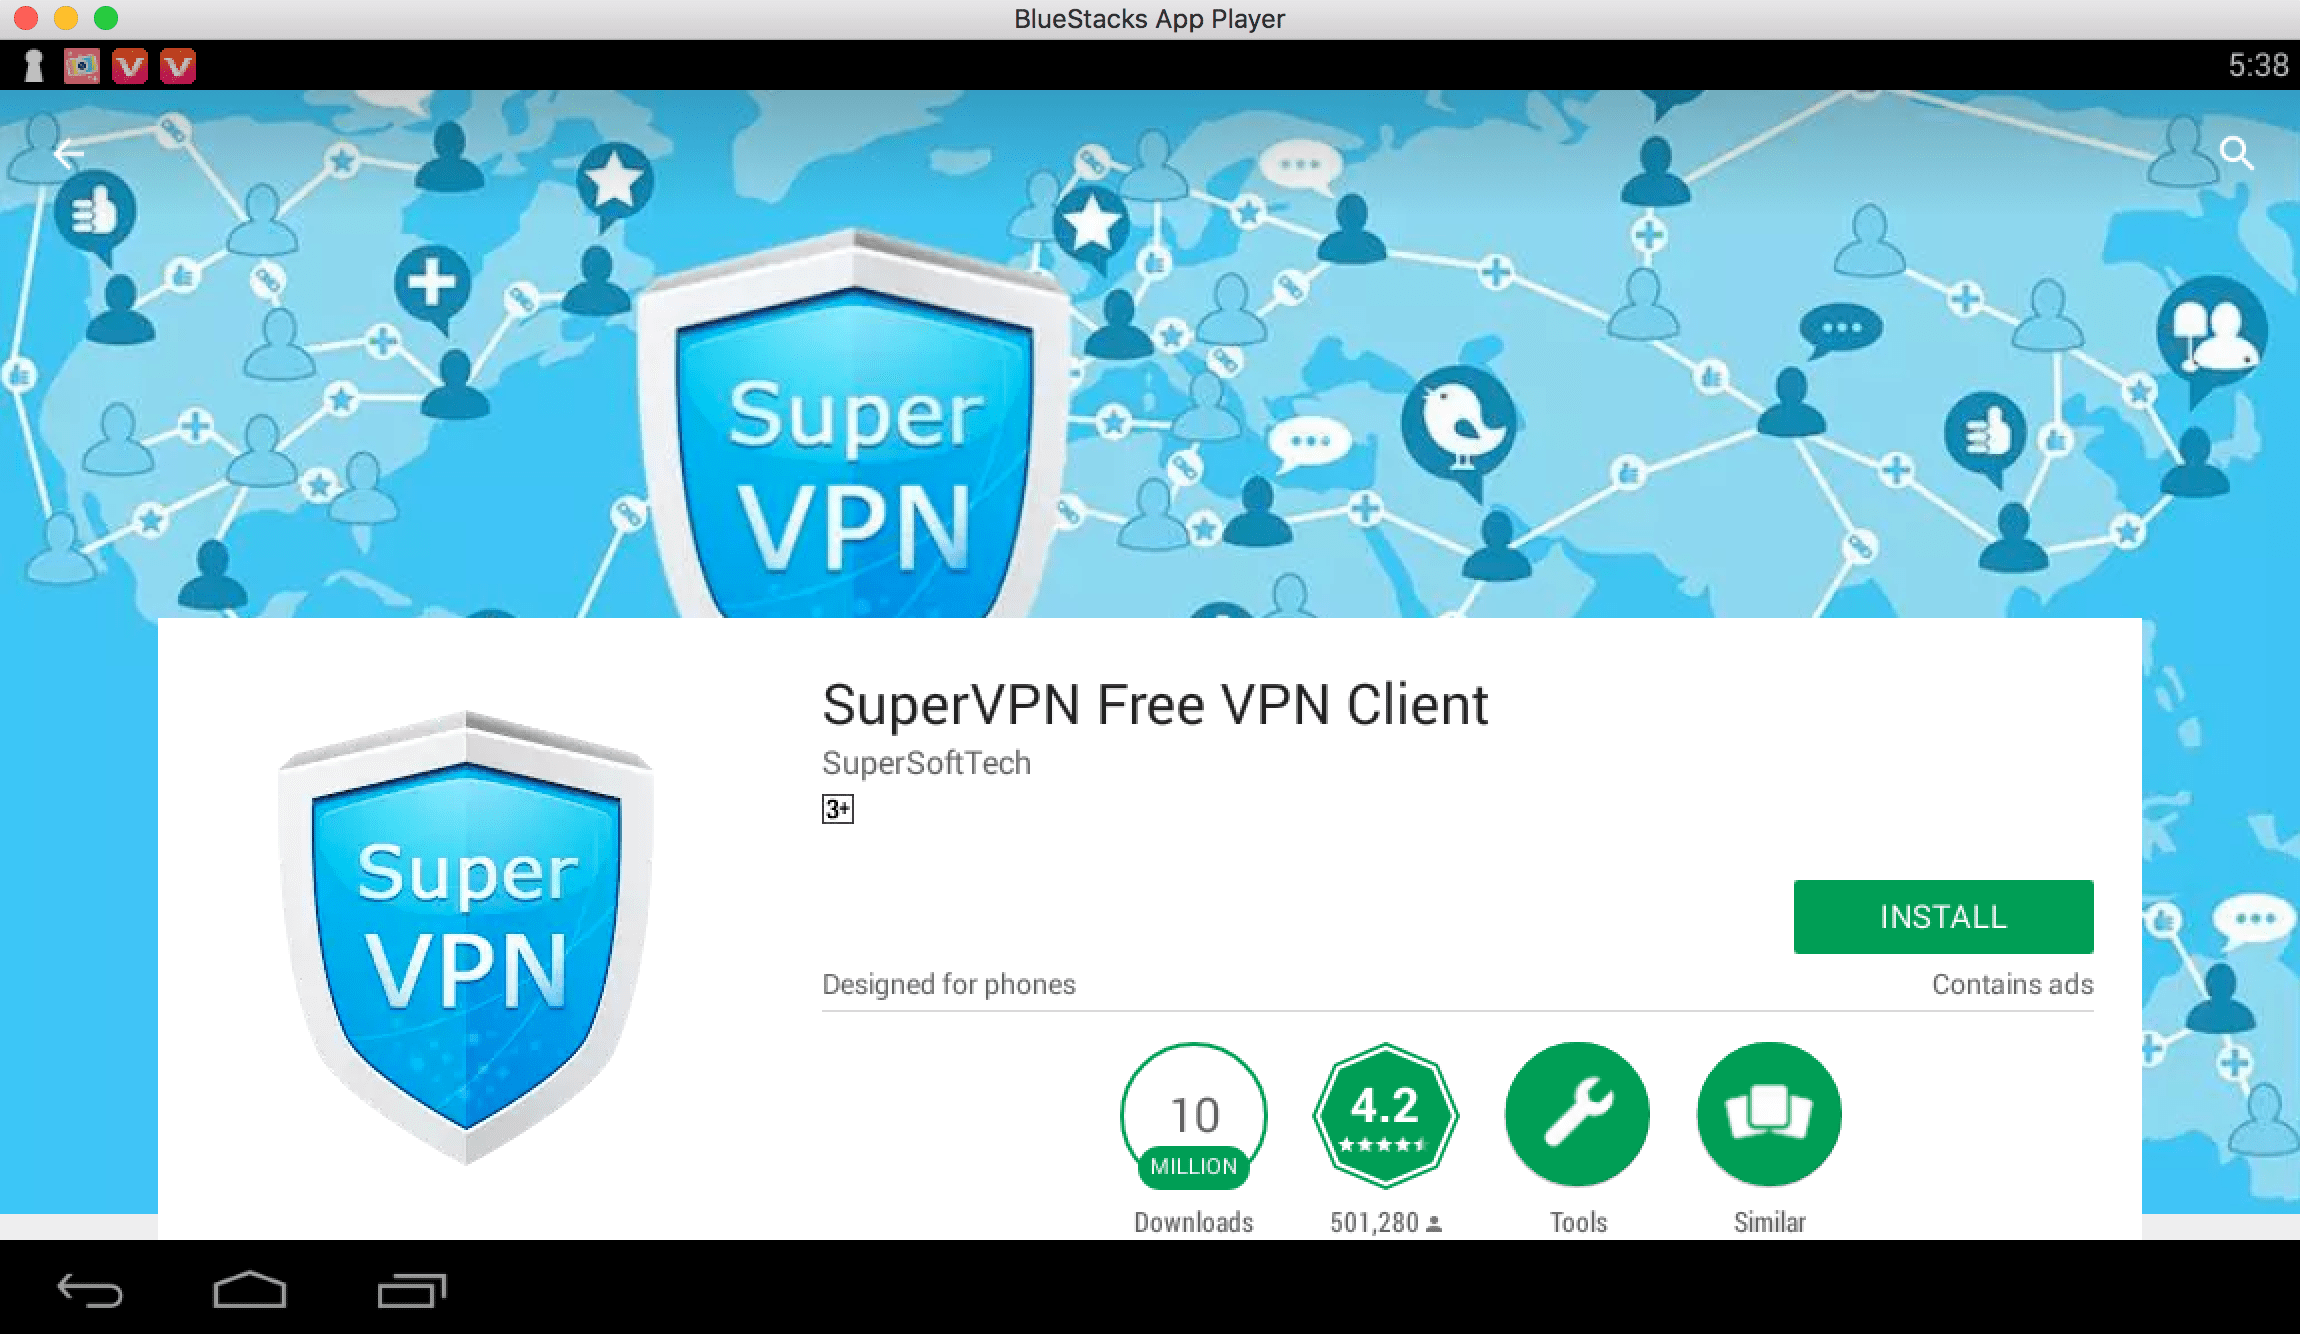 Image of Super VPN on PC